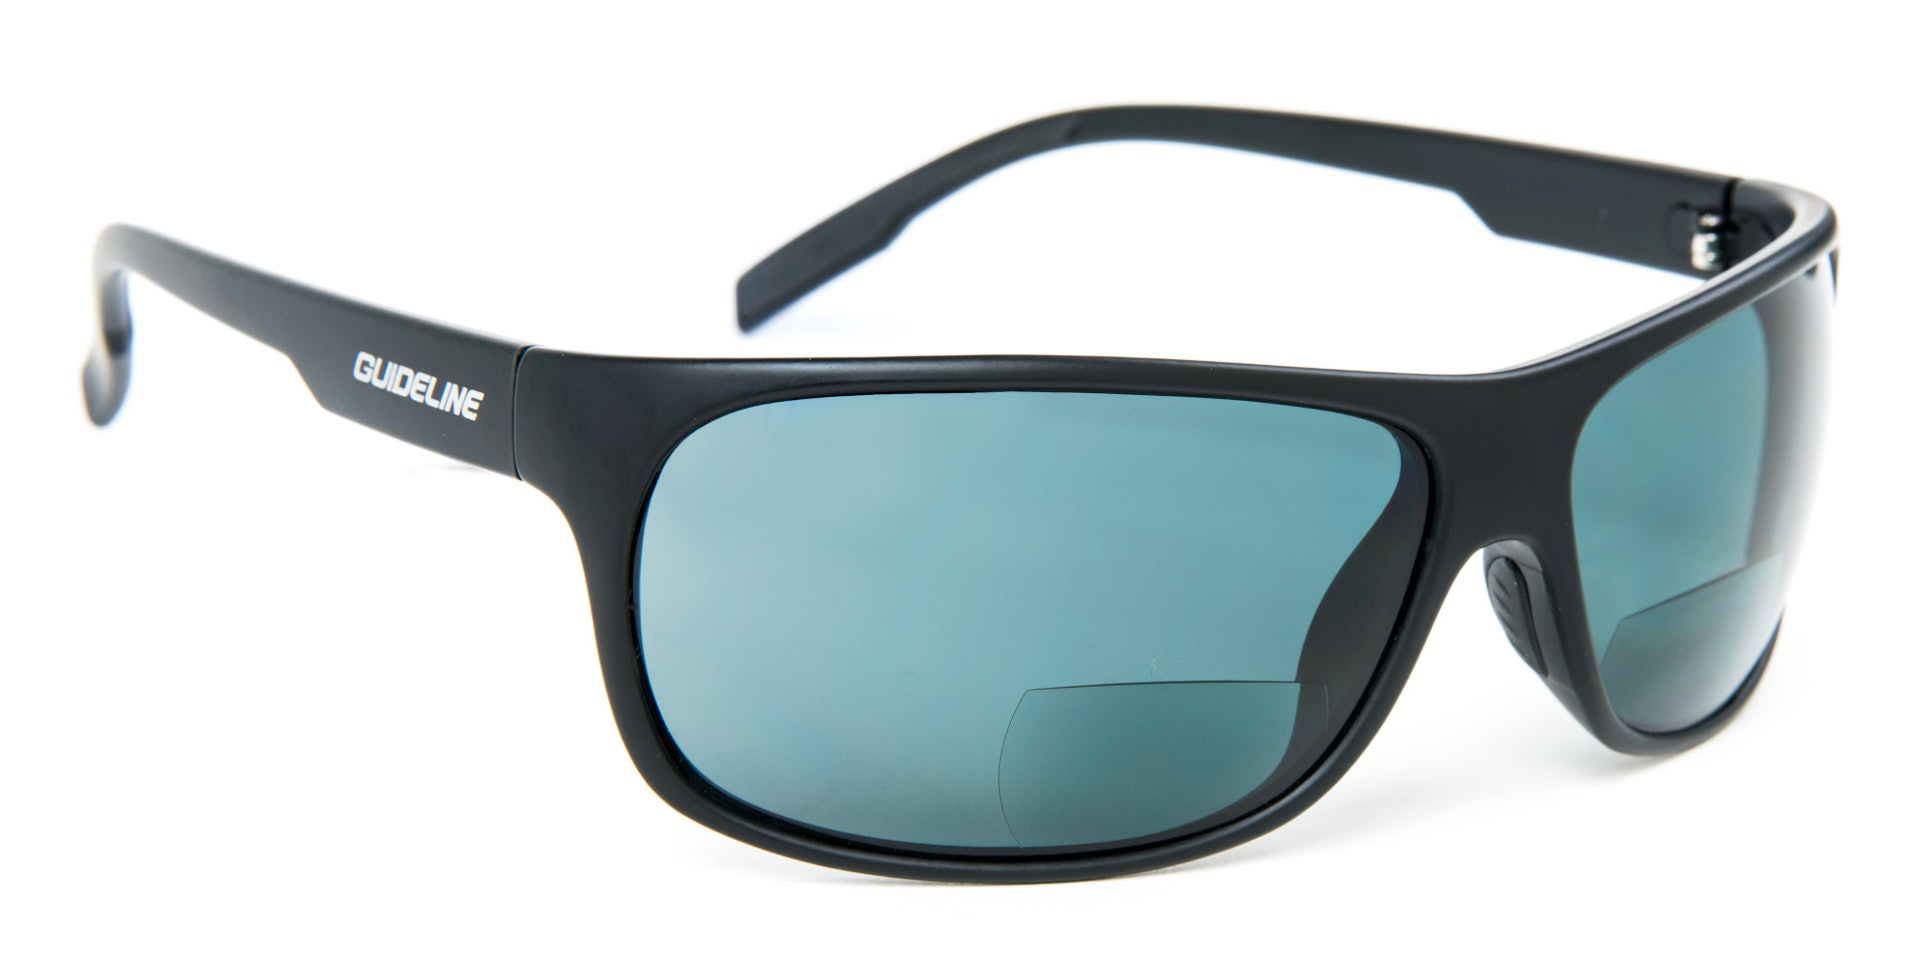 Eyewear - Polarized sunglasses - UV400 Protection